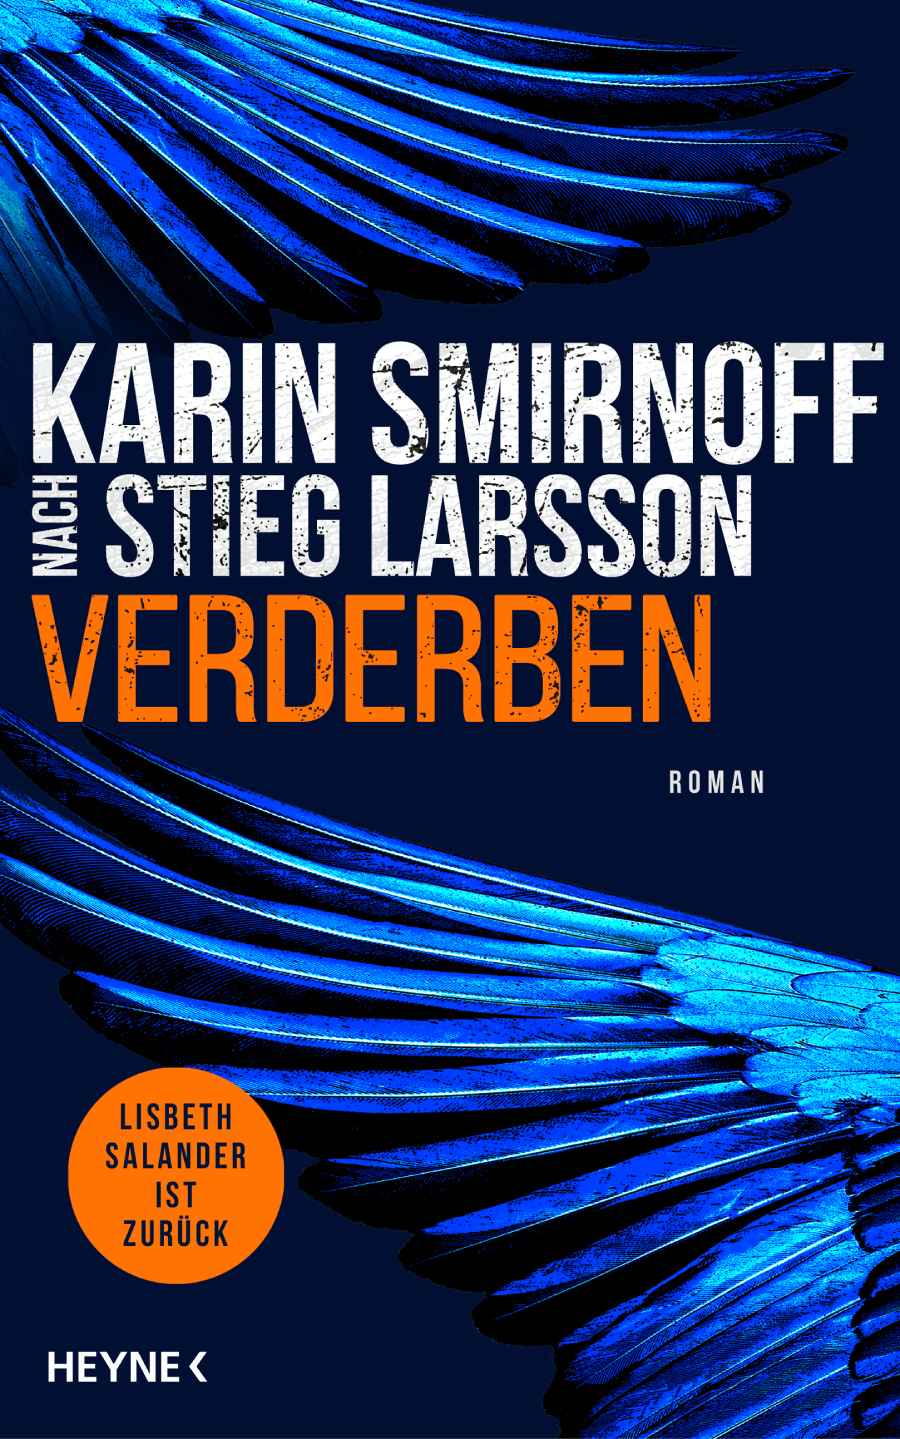 Umschlag des Krimis "Verderben" von Karin Smirnoff. Repro: Heyne-Verlag